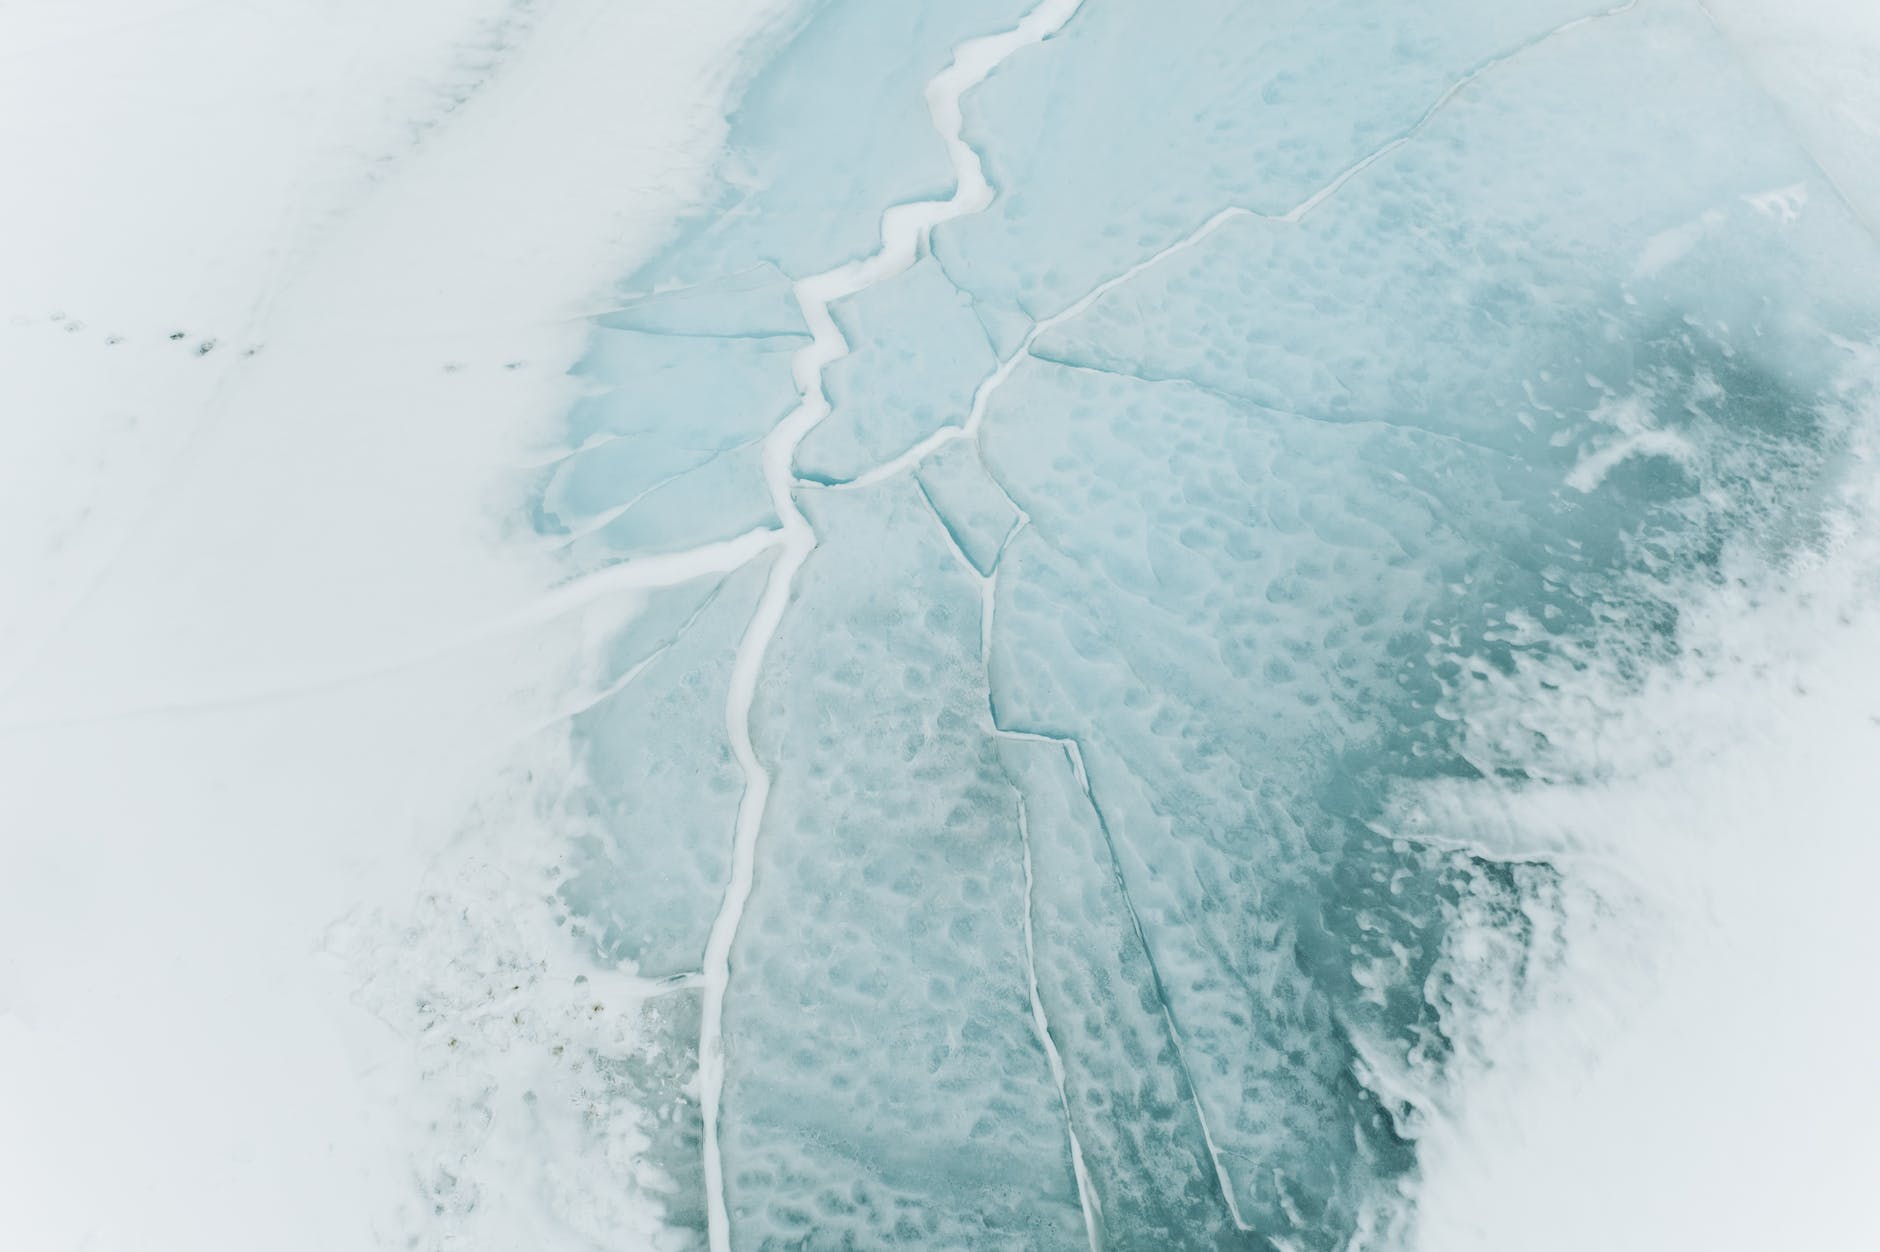 Das Eis begann zu brechen. | Quelle: Pexels